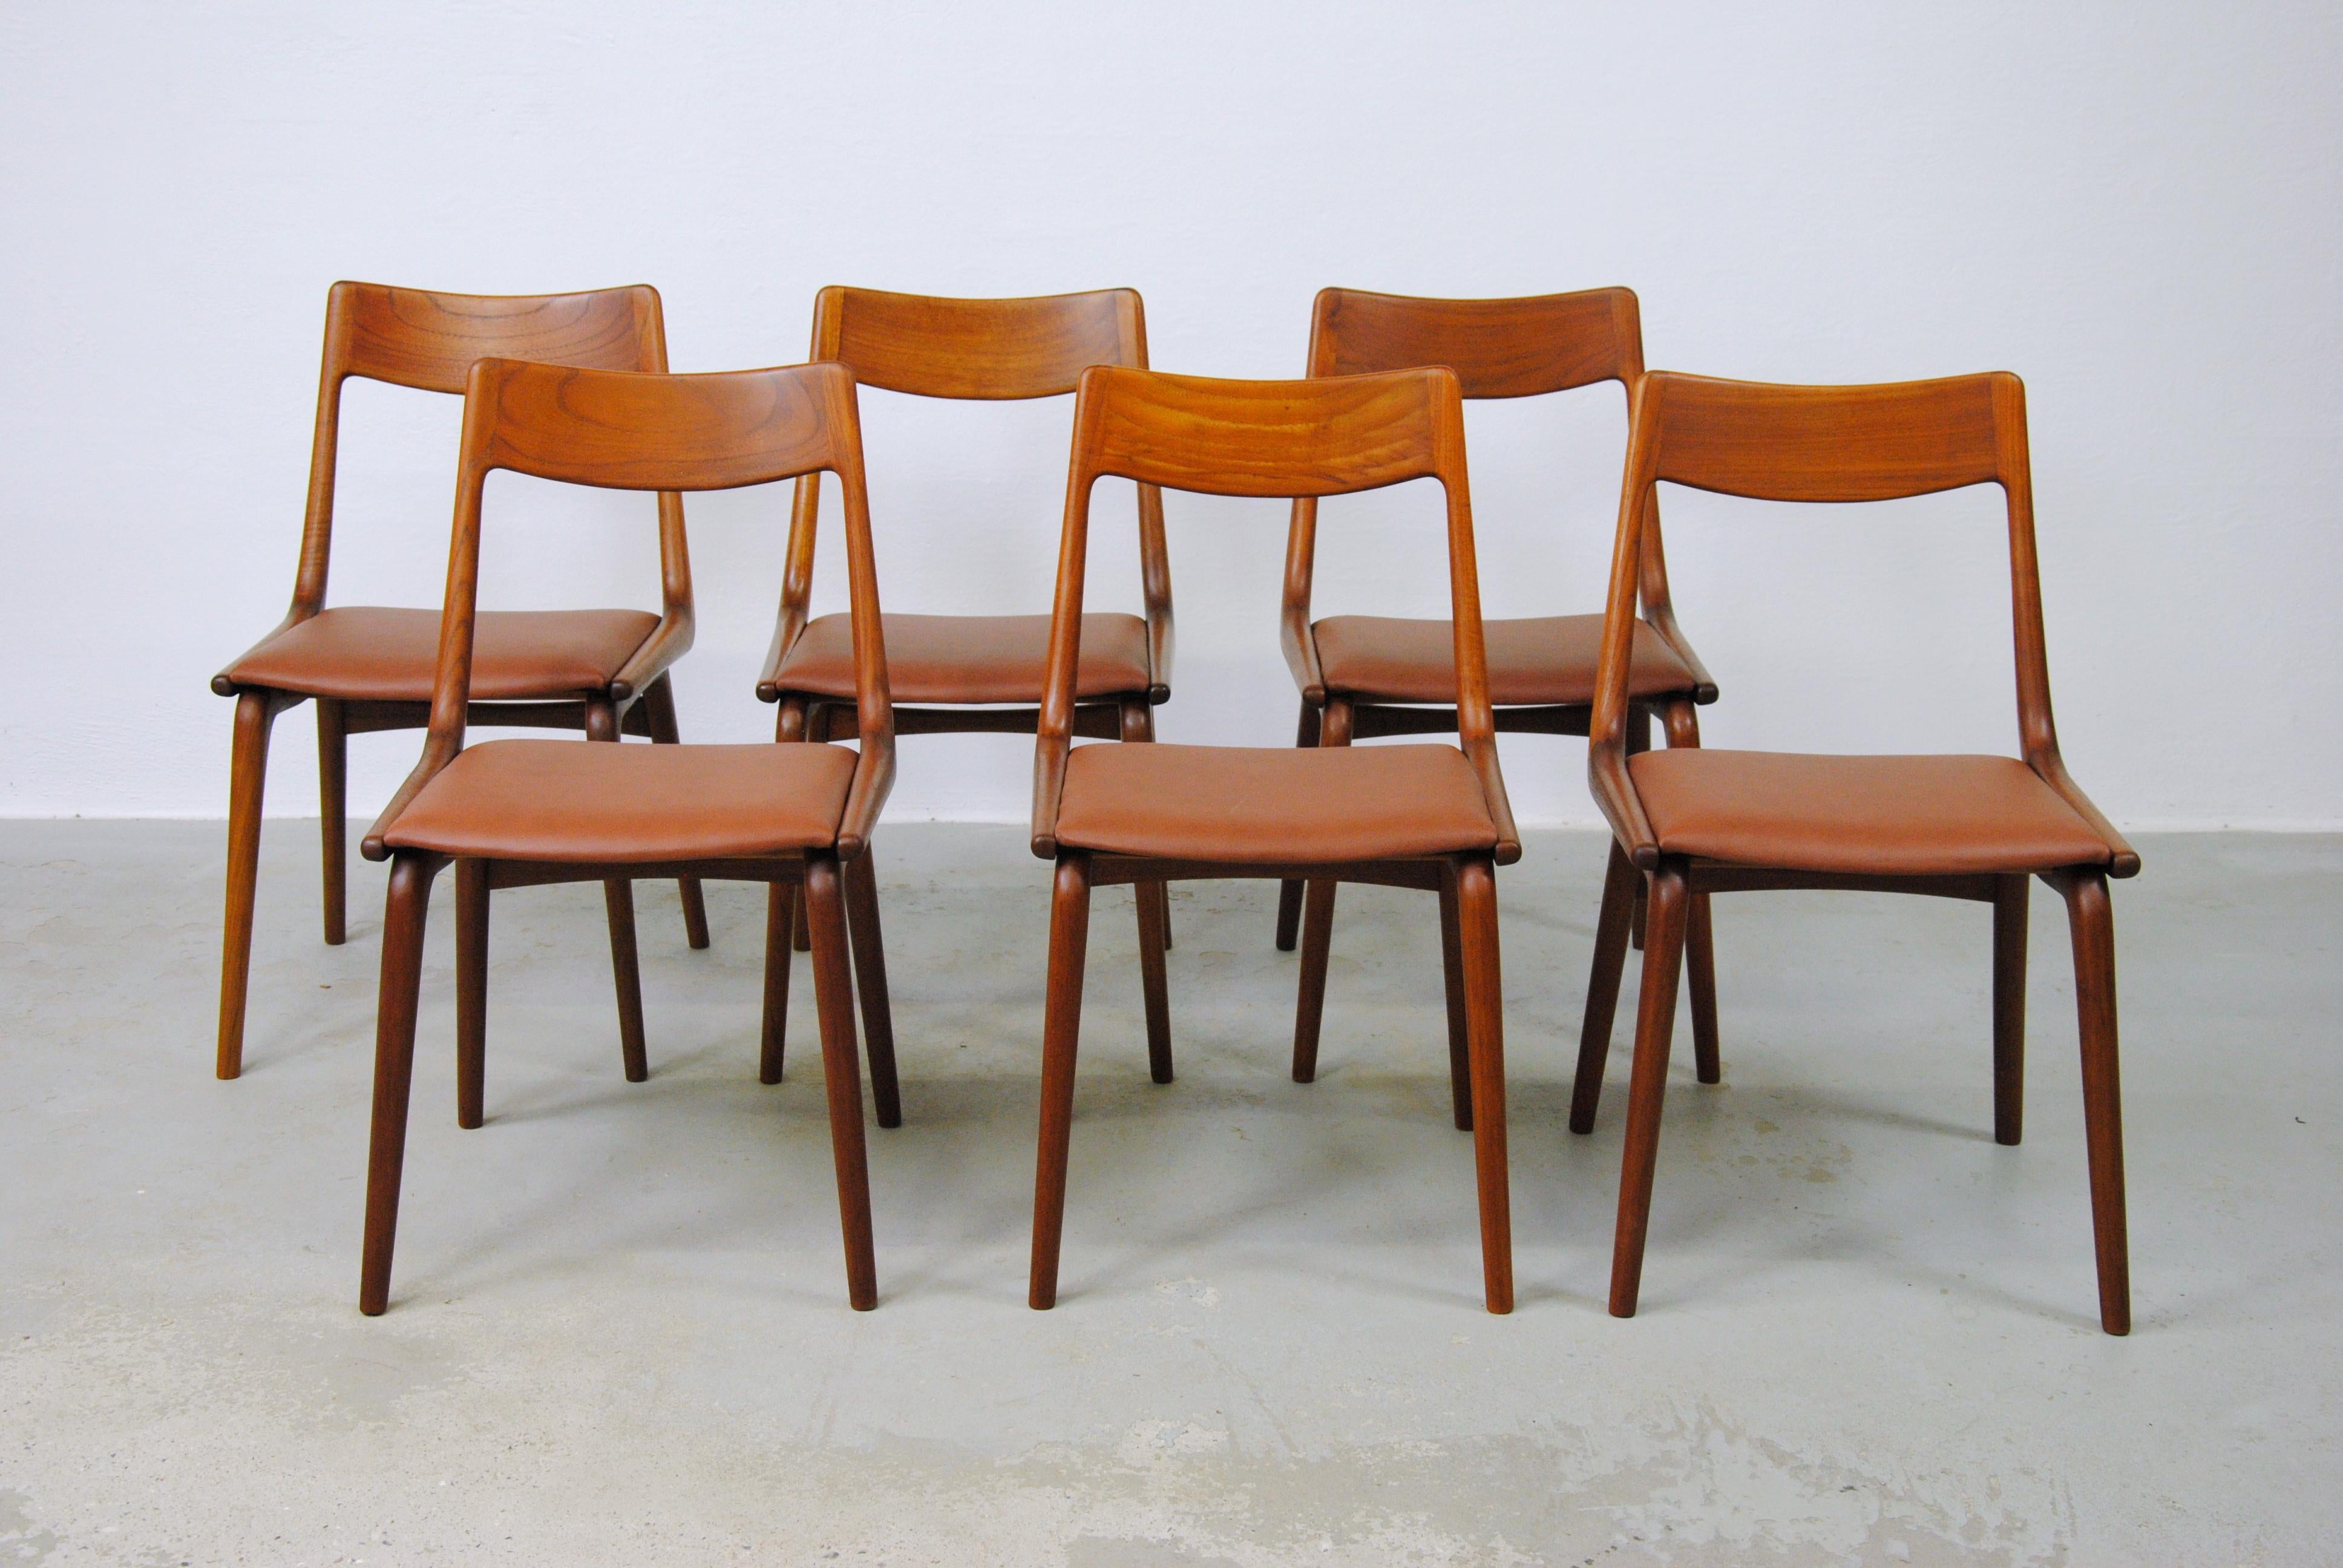 Ensemble de six chaises de salle à manger boomerang danoises des années 1950 en teck par Alfred Christensen pour Slagelse Møbelfabrik.

Les chaises confortables présentent un cadre simple mais élégant en forme de boomerang en teck massif courbé,